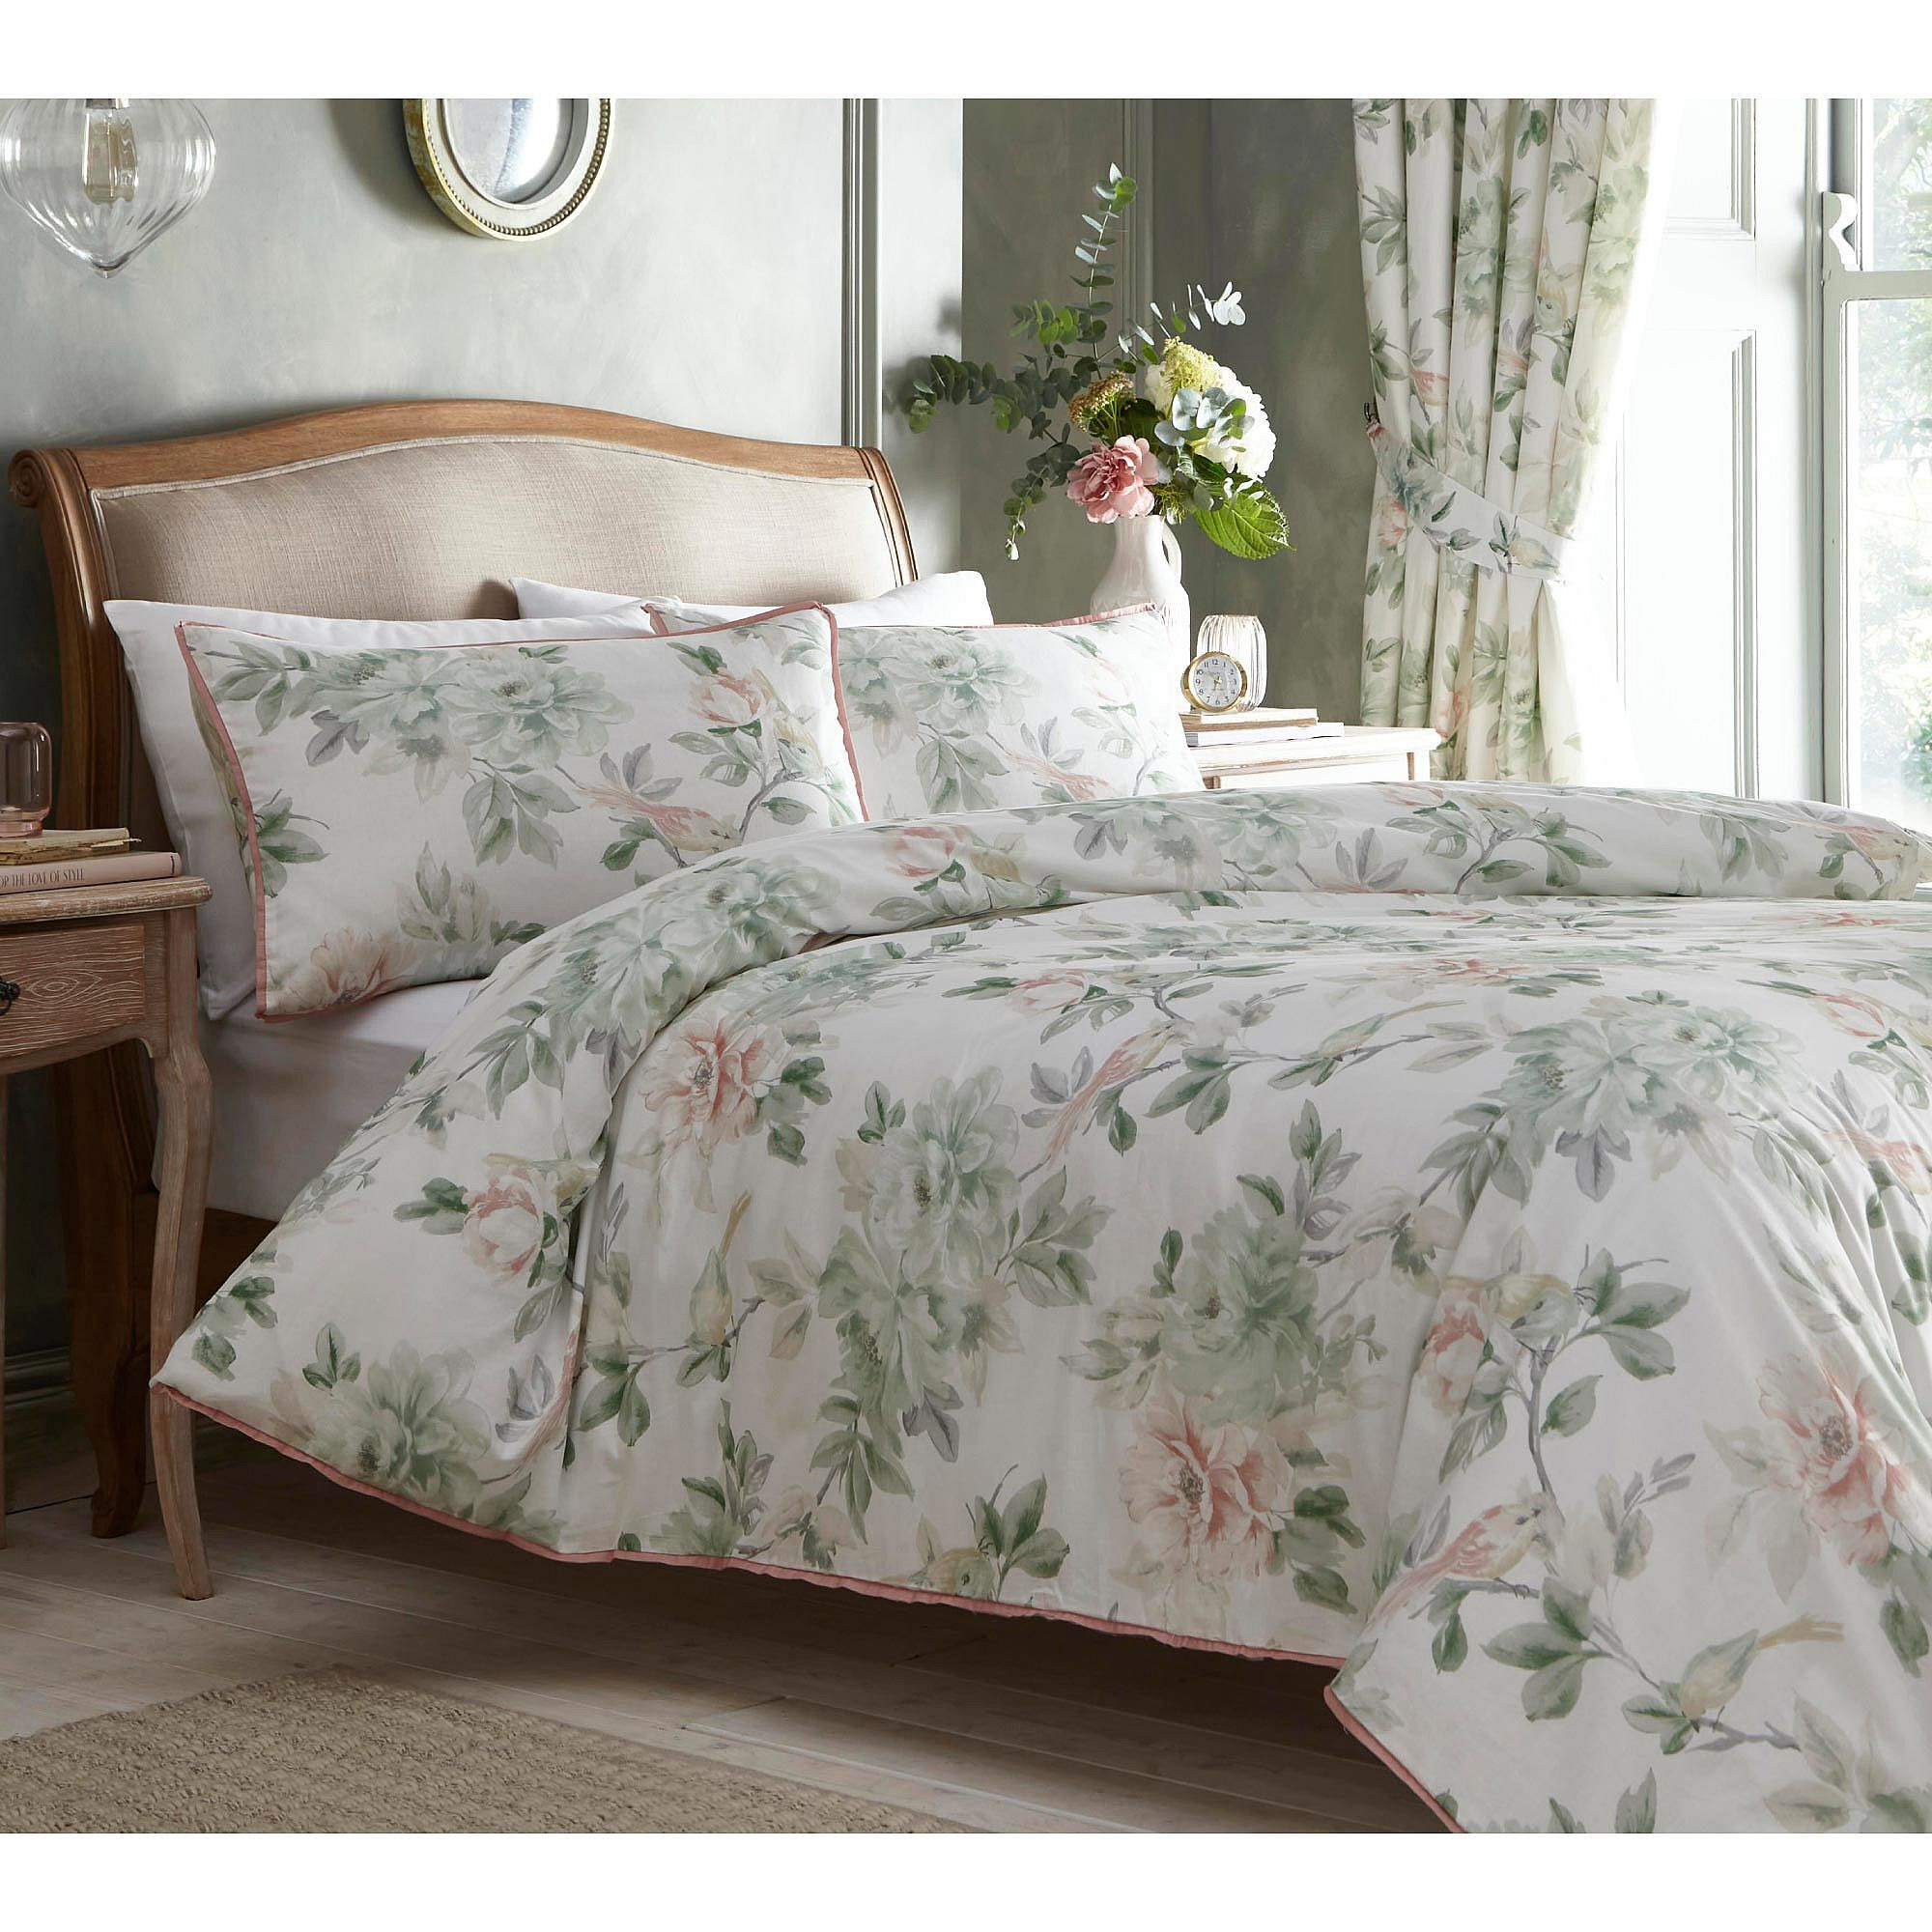 Botanist Watercolour Floral Bed Linen Set (Double Set) - image 1